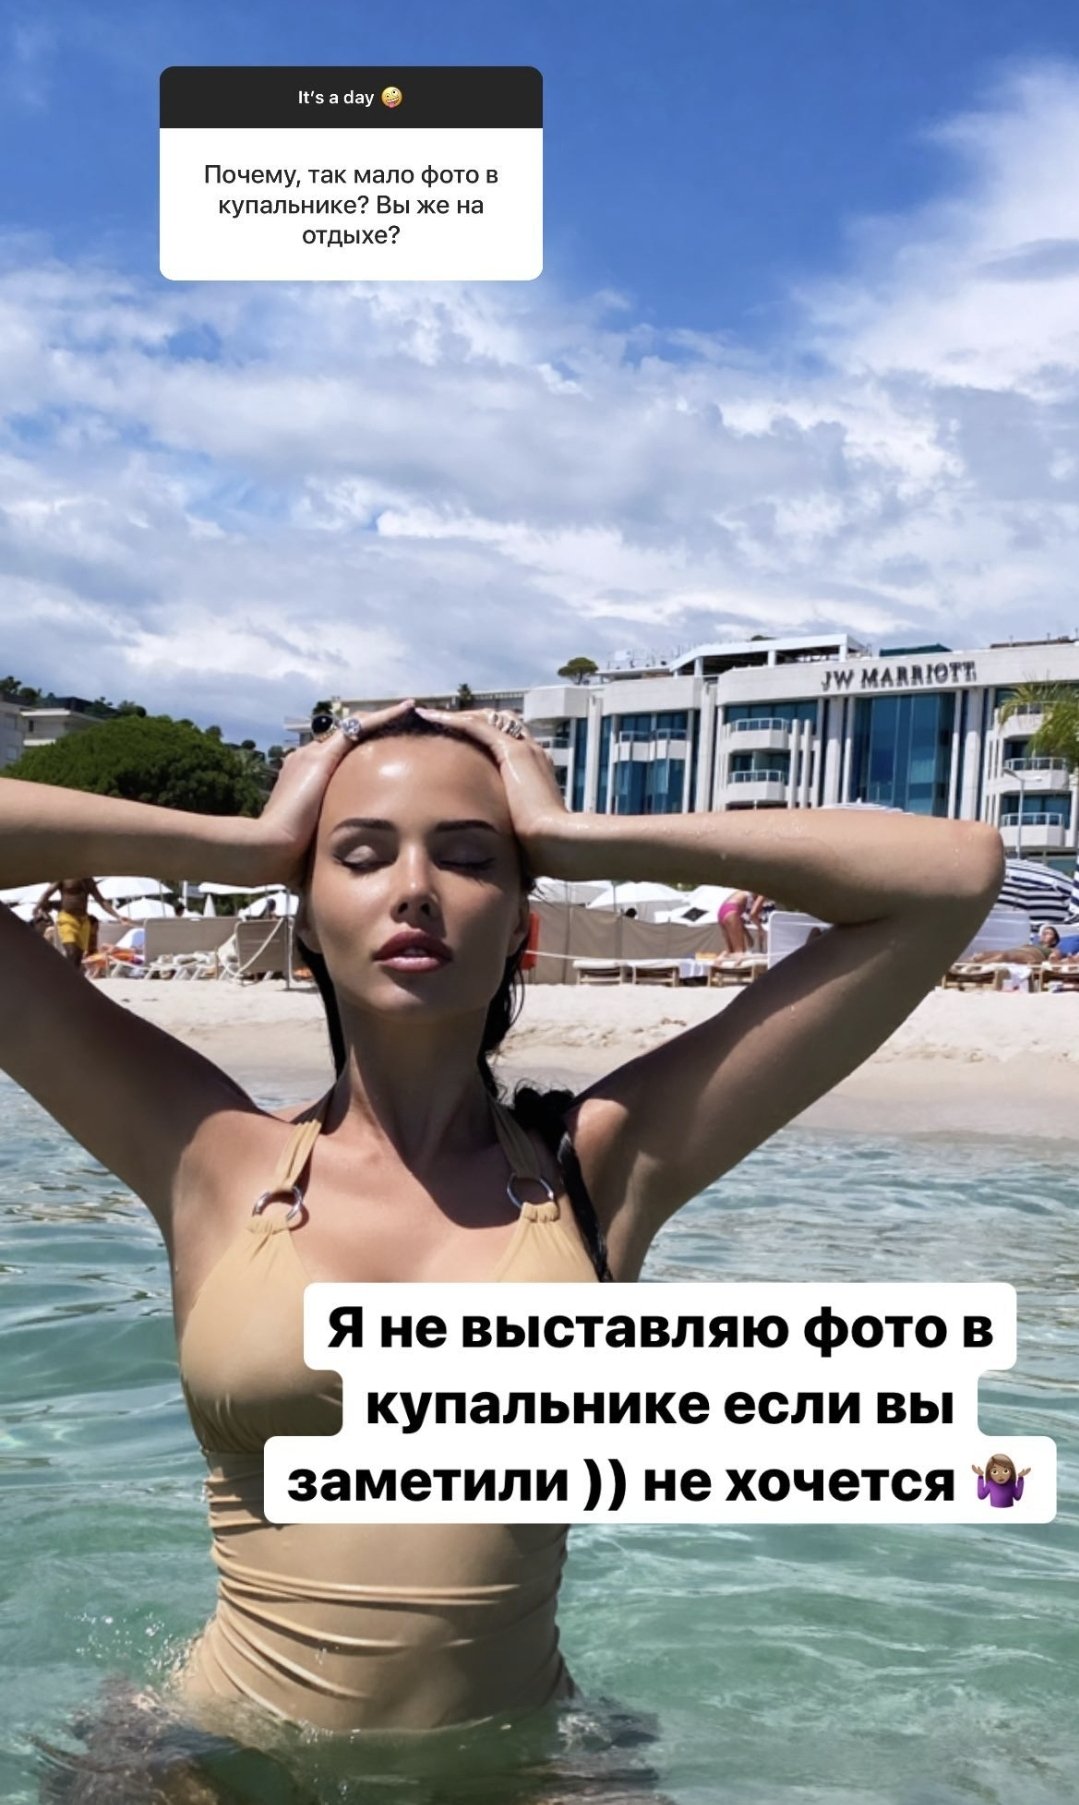 Анастасия Решетова перестала публиковать в Инстаграм фото в бикини. Причина проста